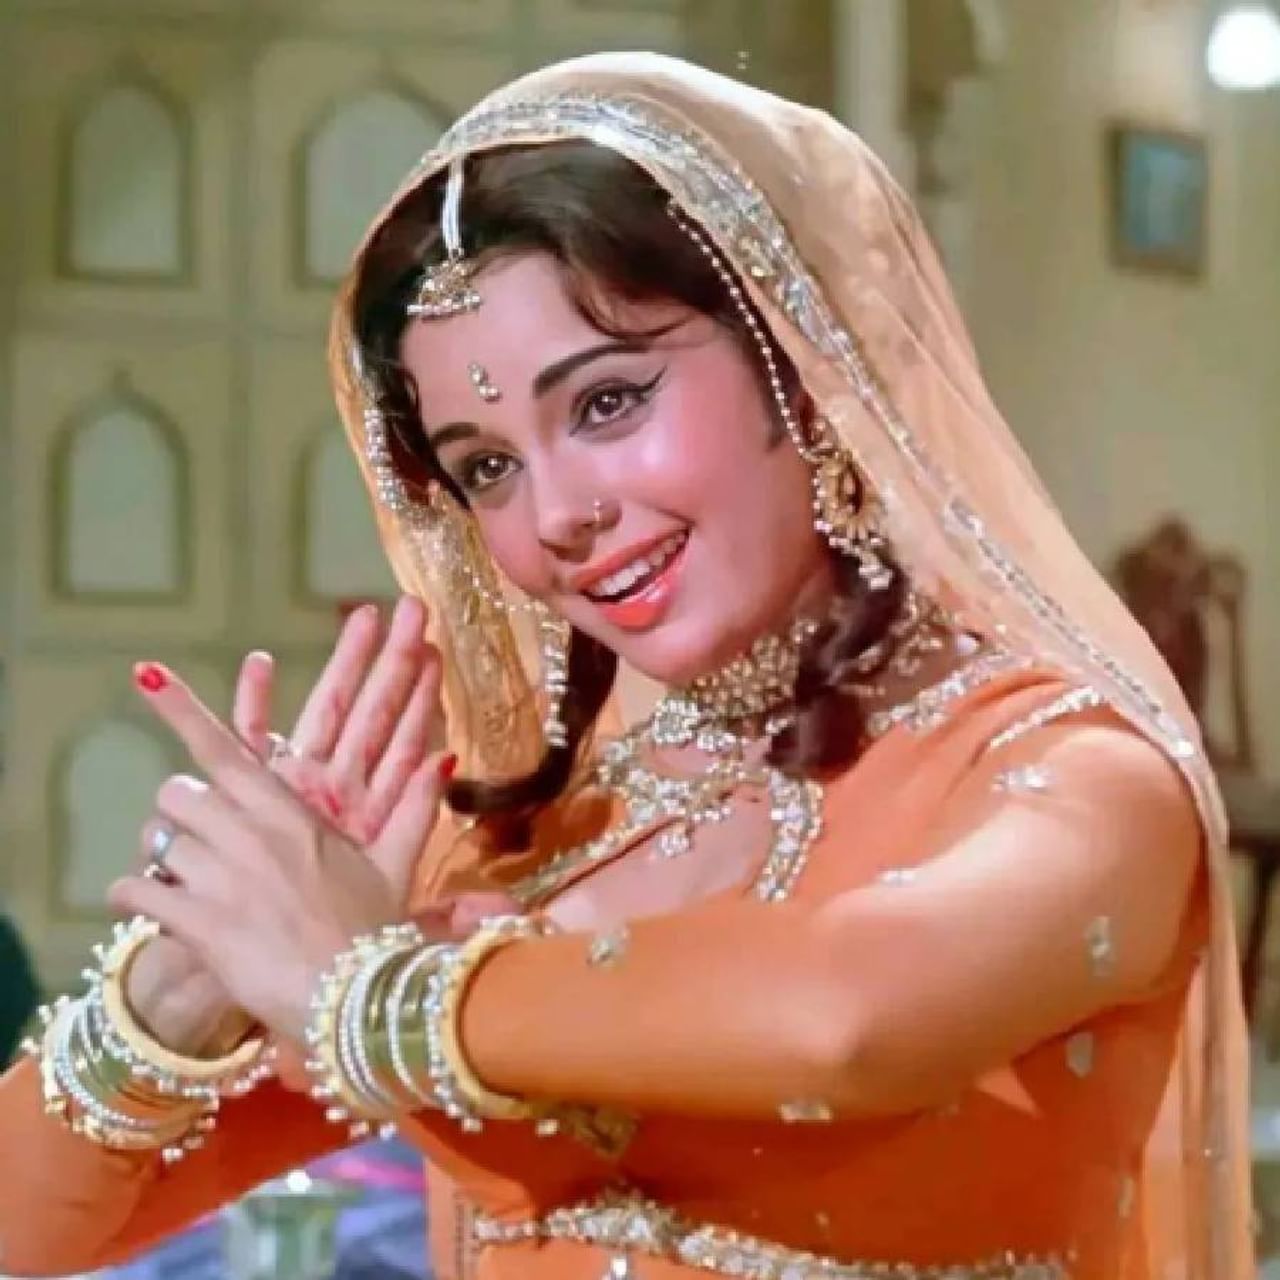 बॉलिवूडची प्रसिद्ध अभिनेत्री मुमताज आज तिचा 75 वा   वाढदिवस साजरा करत आहे.  31 जुलै 1947 रोजी जन्मलेल्या मुमताजने शम्मी कपूर आणि फिरोज खान यांच्यासह हिंदी चित्रपटसृष्टीतील दिग्गज कलाकारांसोबत काम केले आहे.